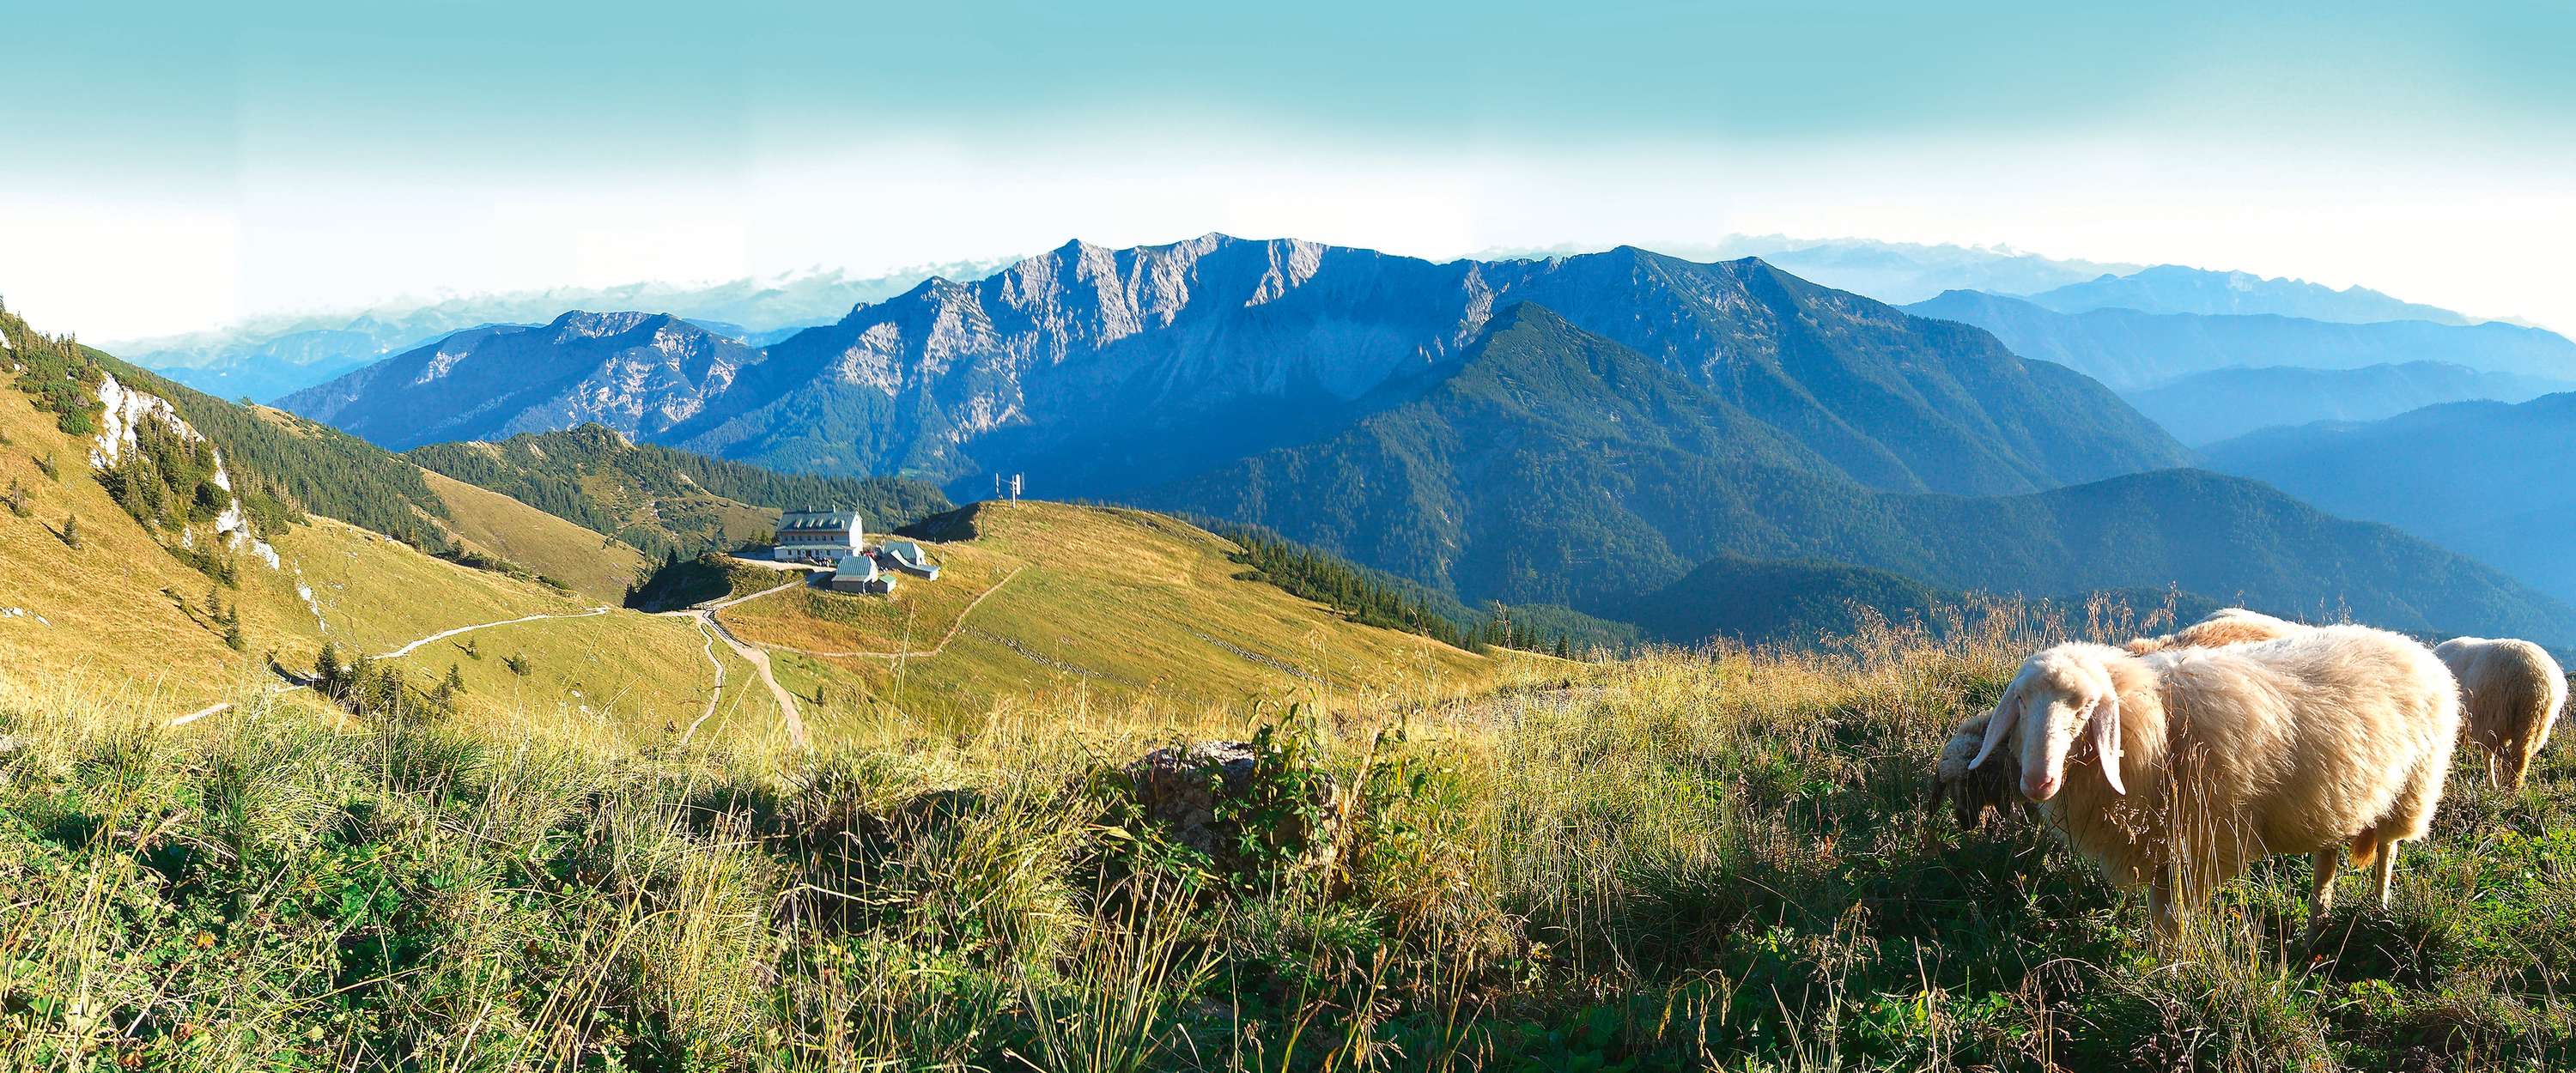             Fototapete Berglandschaft mit Panorama Blick
        